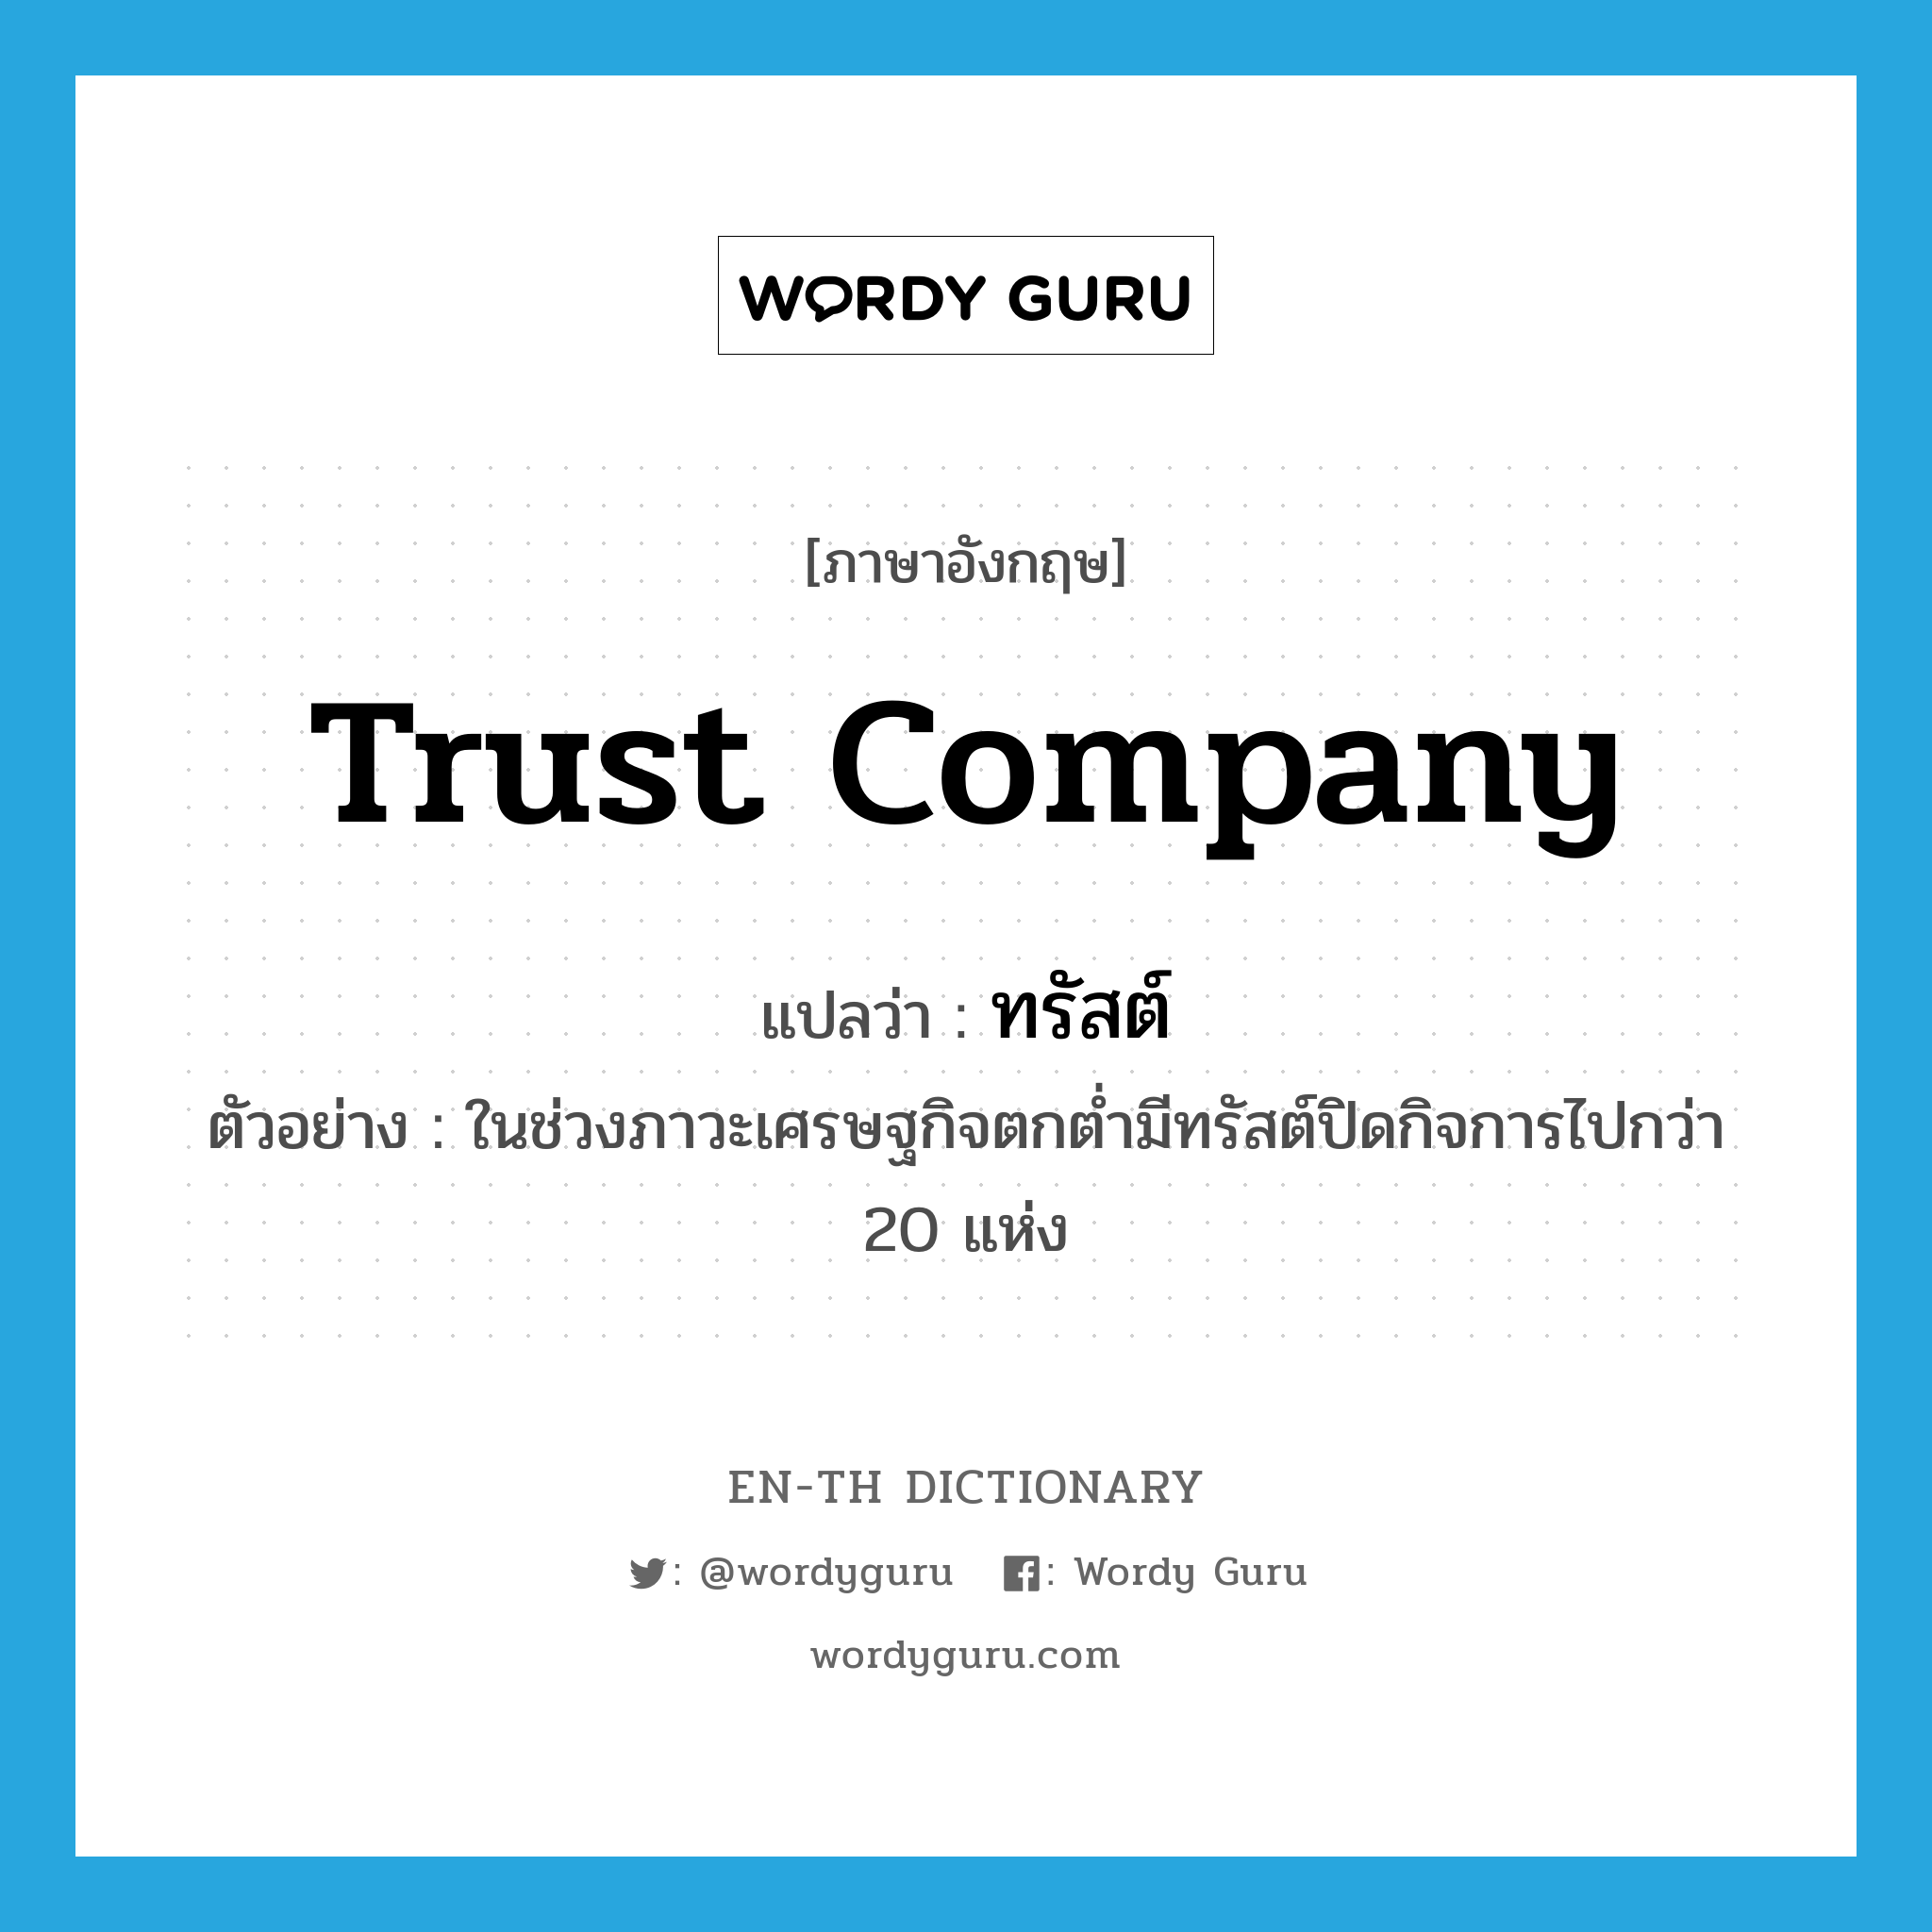 trust company แปลว่า?, คำศัพท์ภาษาอังกฤษ trust company แปลว่า ทรัสต์ ประเภท N ตัวอย่าง ในช่วงภาวะเศรษฐกิจตกต่ำมีทรัสต์ปิดกิจการไปกว่า 20 แห่ง หมวด N